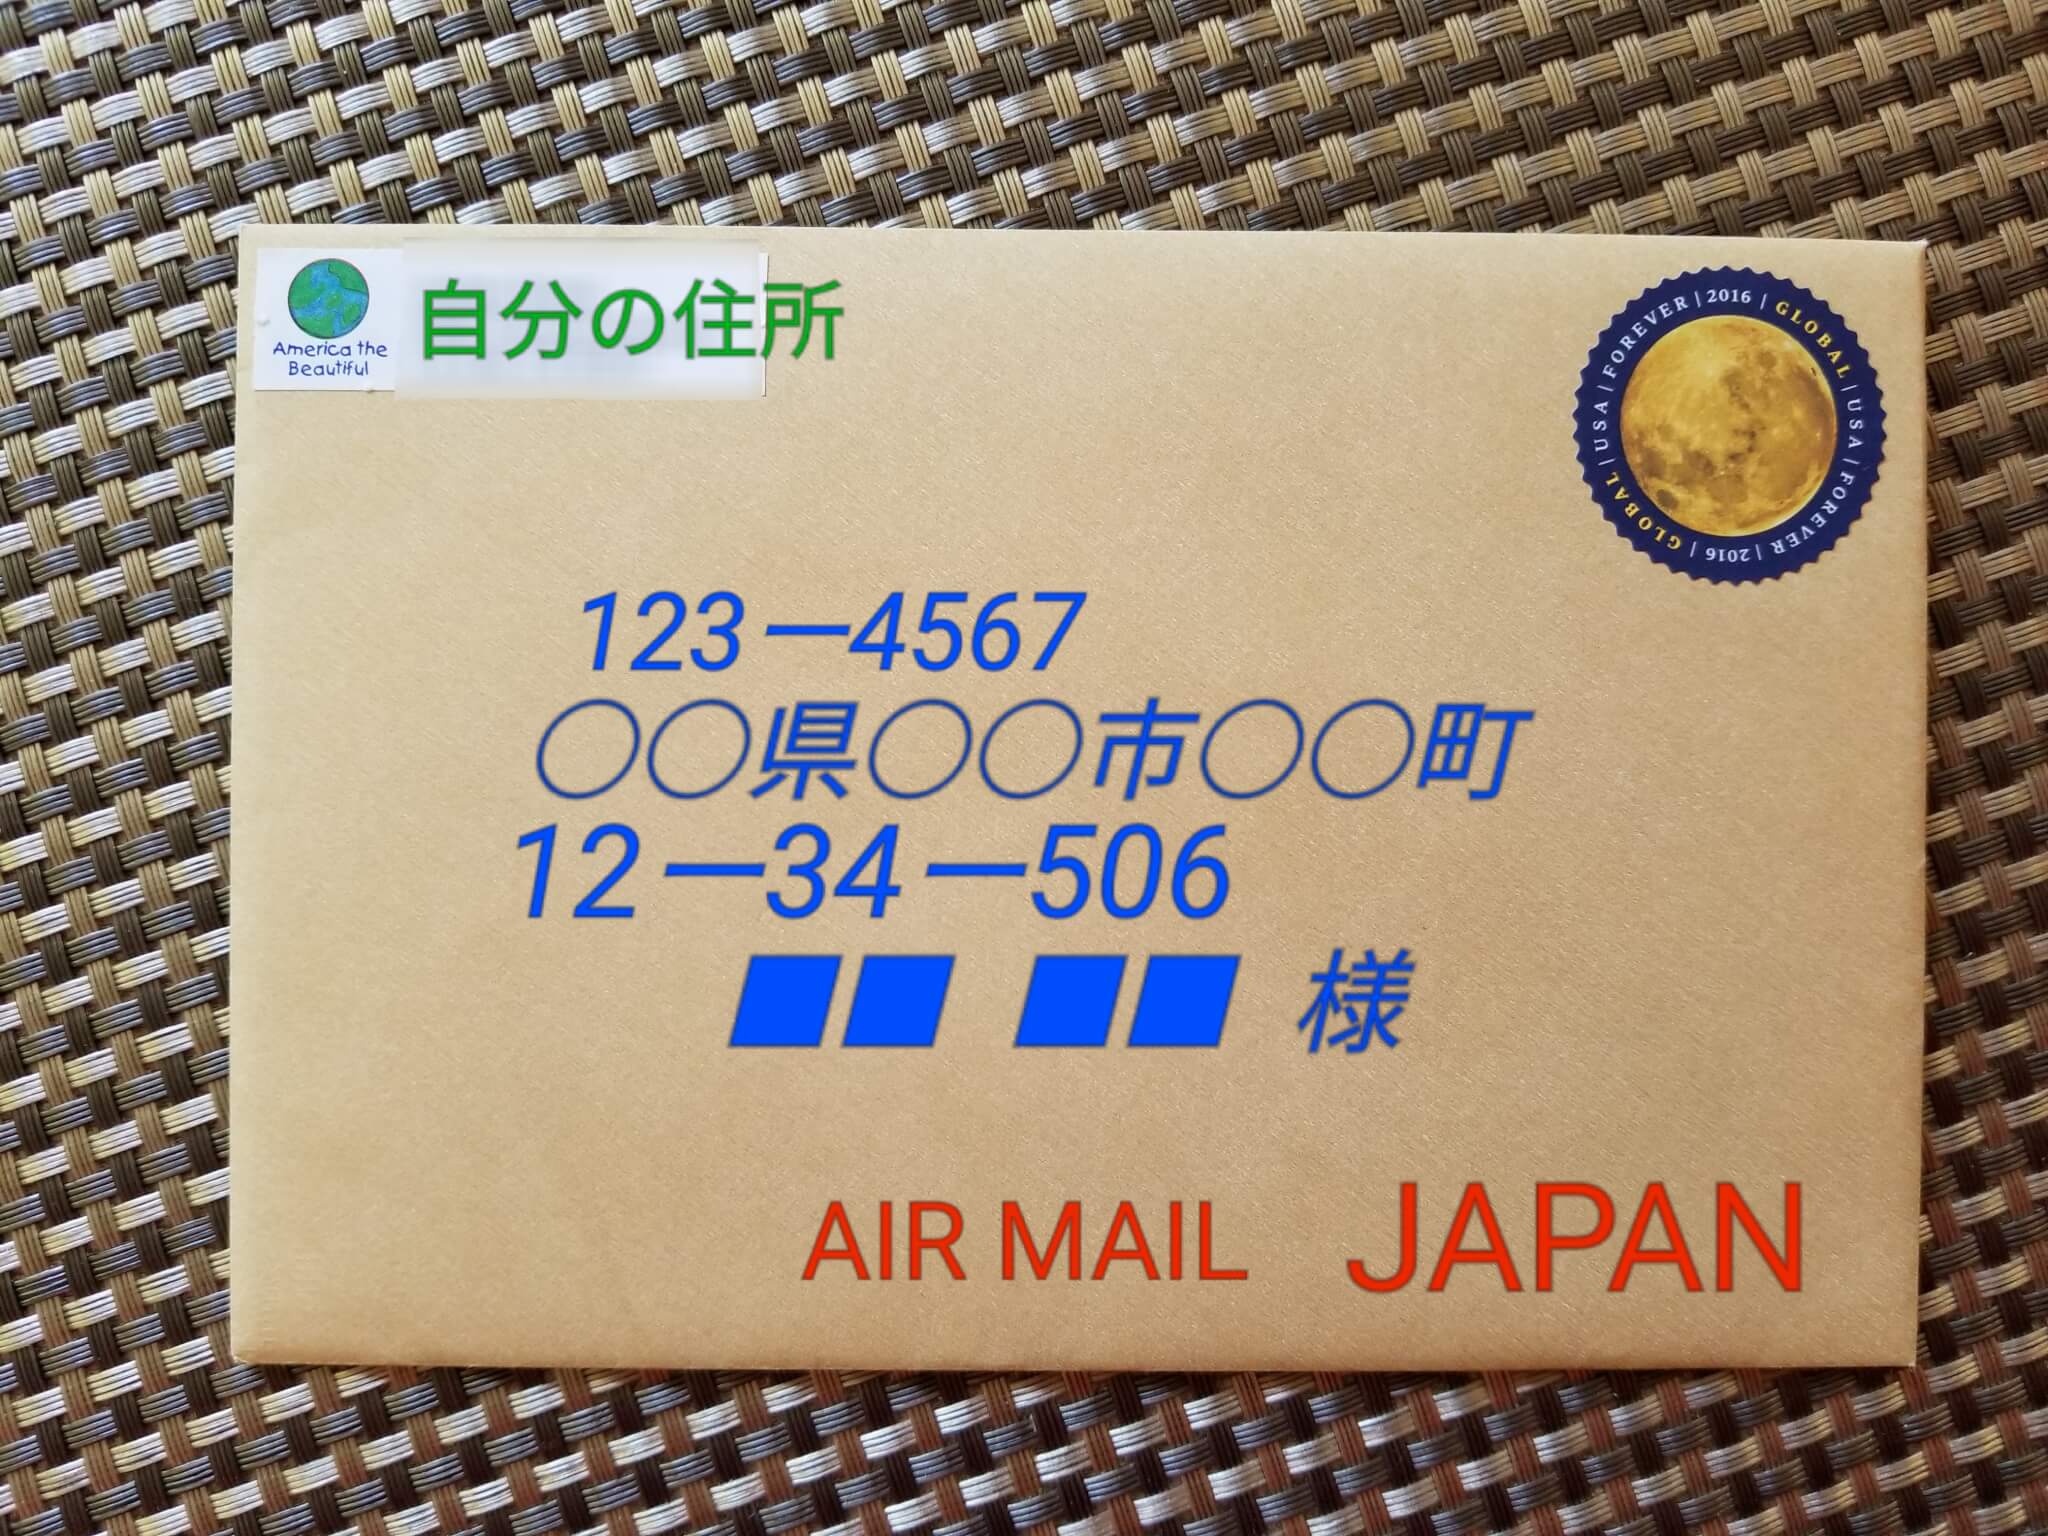 Air Mail スタンプair mail スタンプ イラスト画像集